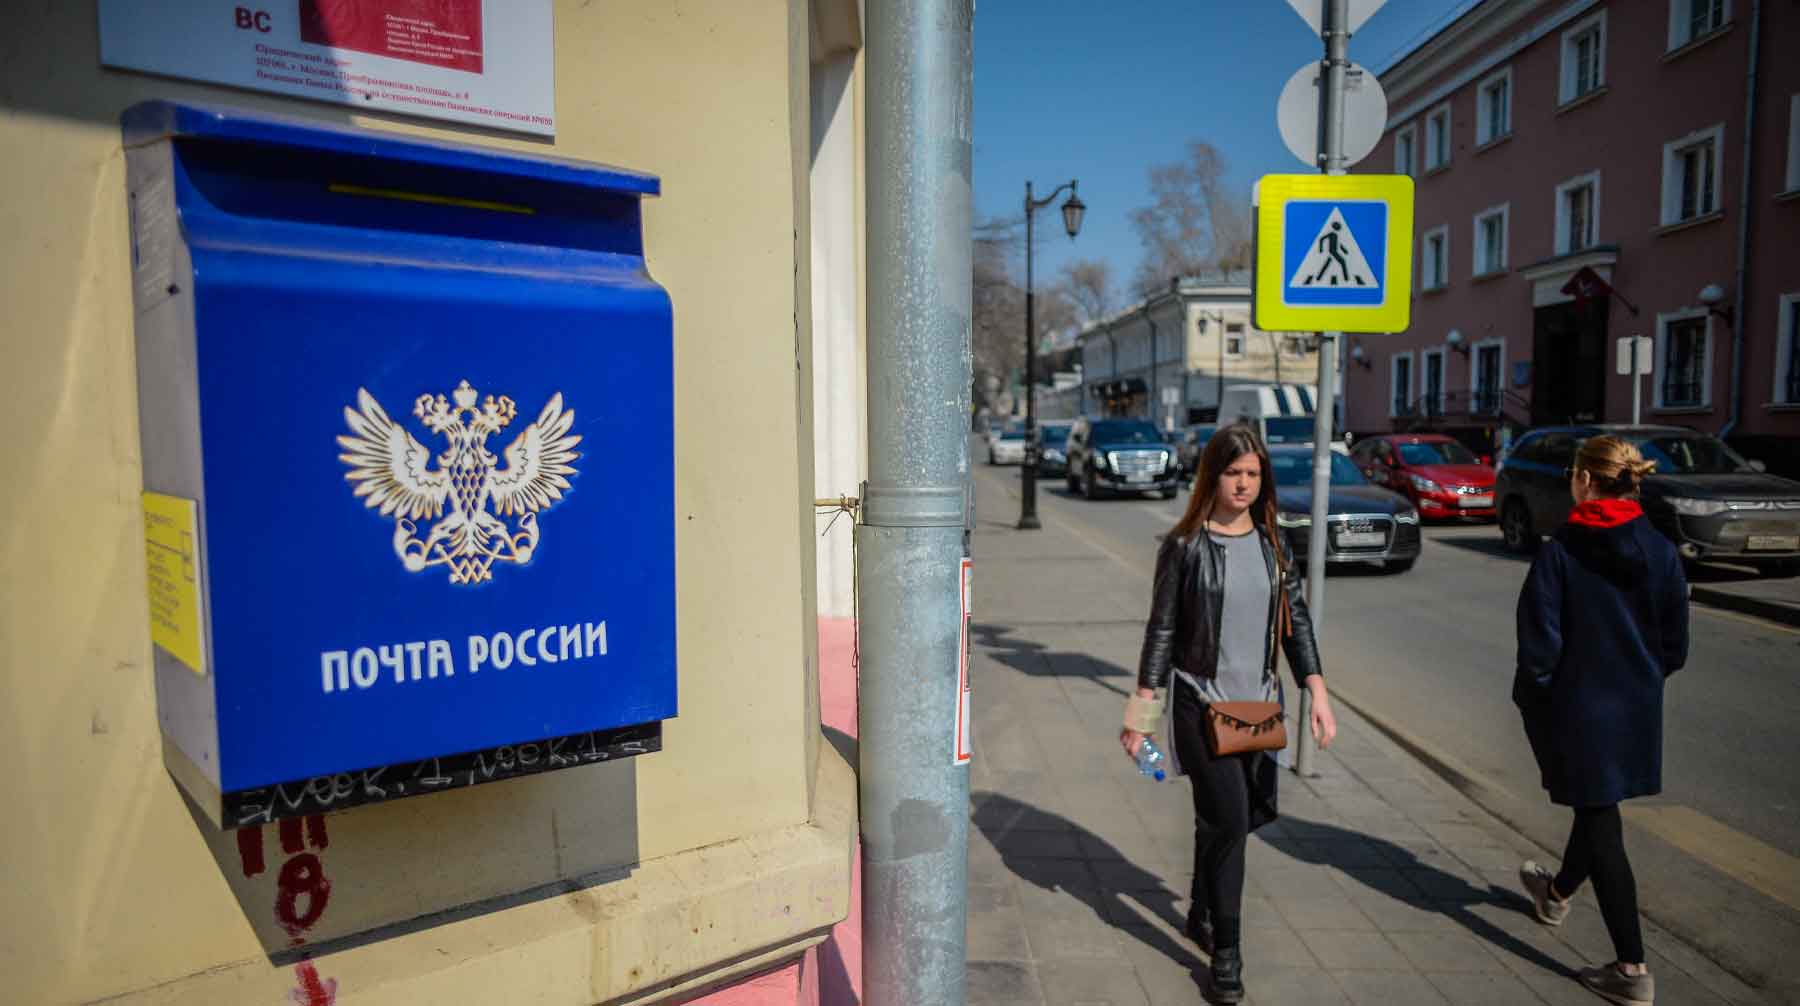 Почтовые отделения могут стать «пунктами притяжения», считают в организации Фото: © GLOBAL LOOK press / Komsomolskaya Pravda